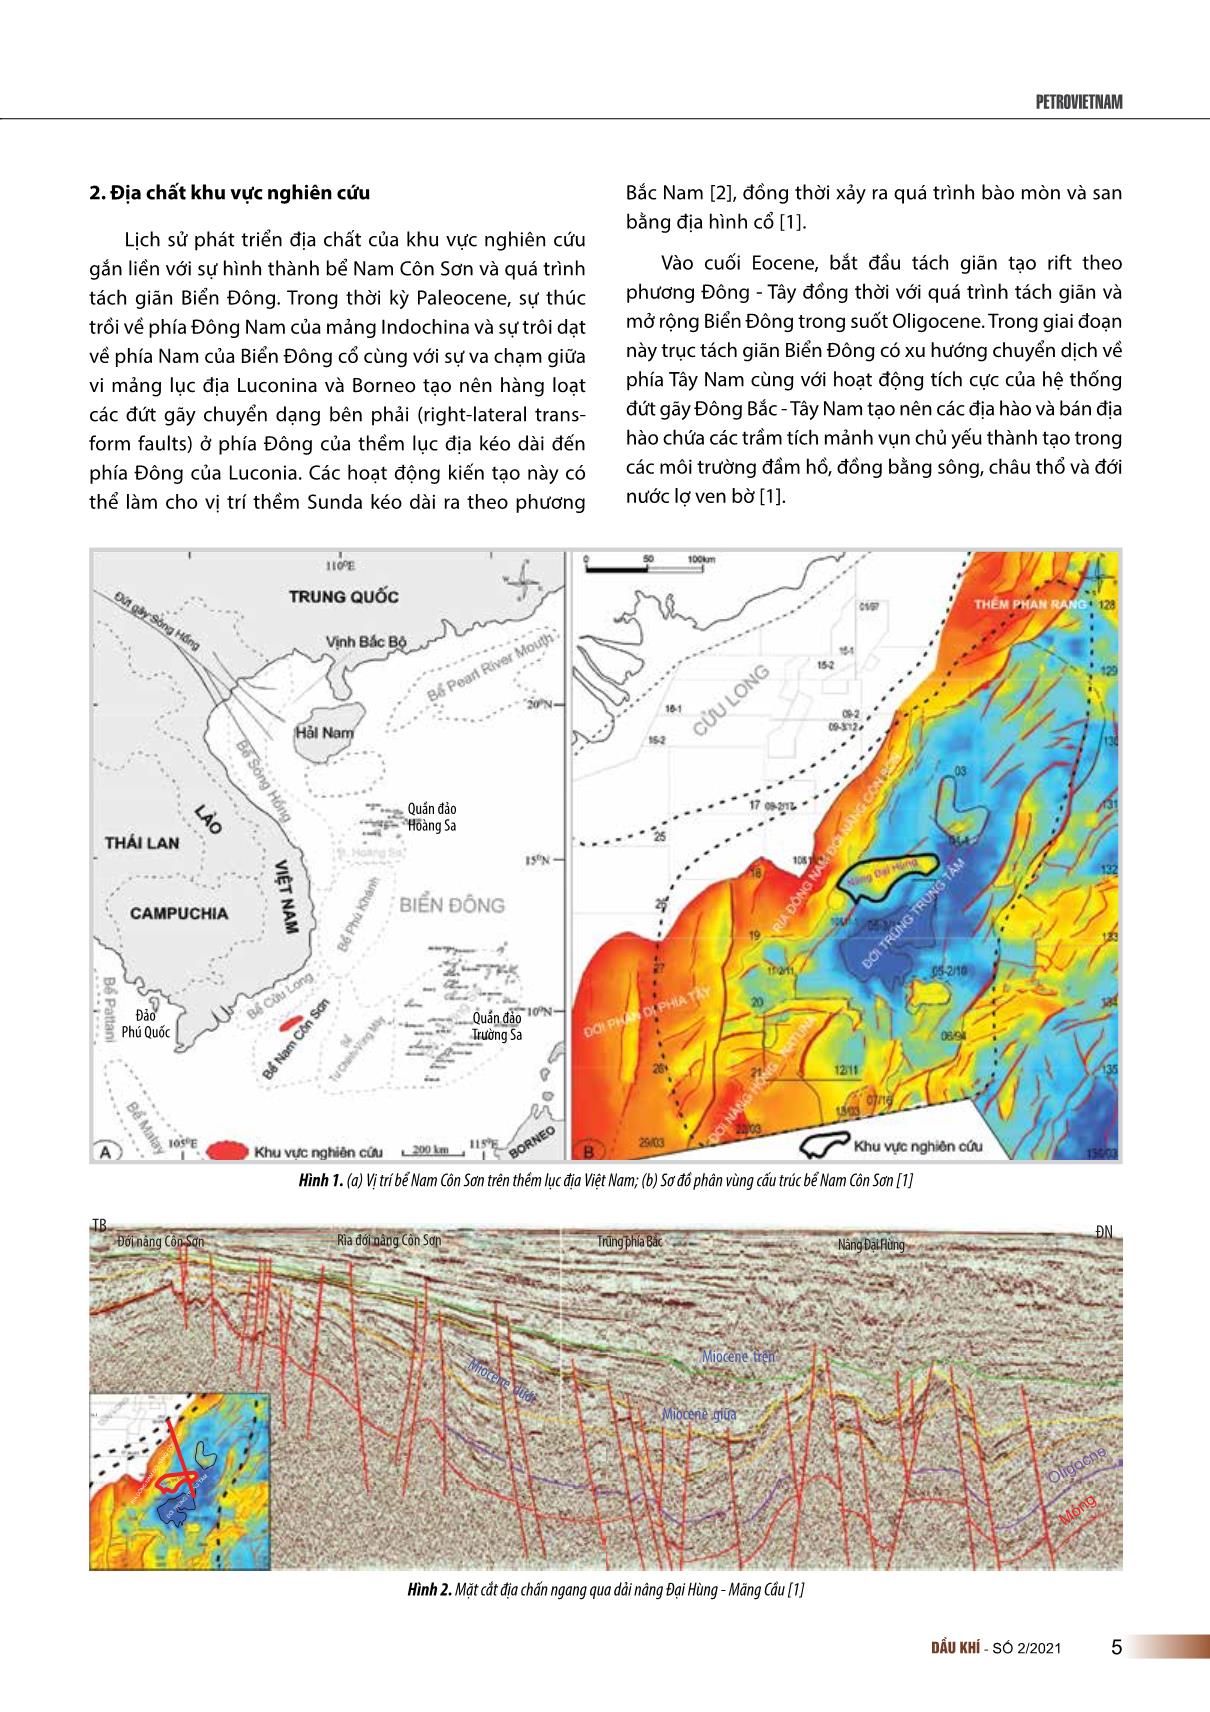 Đặc điểm trầm tích Oligocene khu vực lô 05-1(a) bể Nam Côn Sơn trang 2